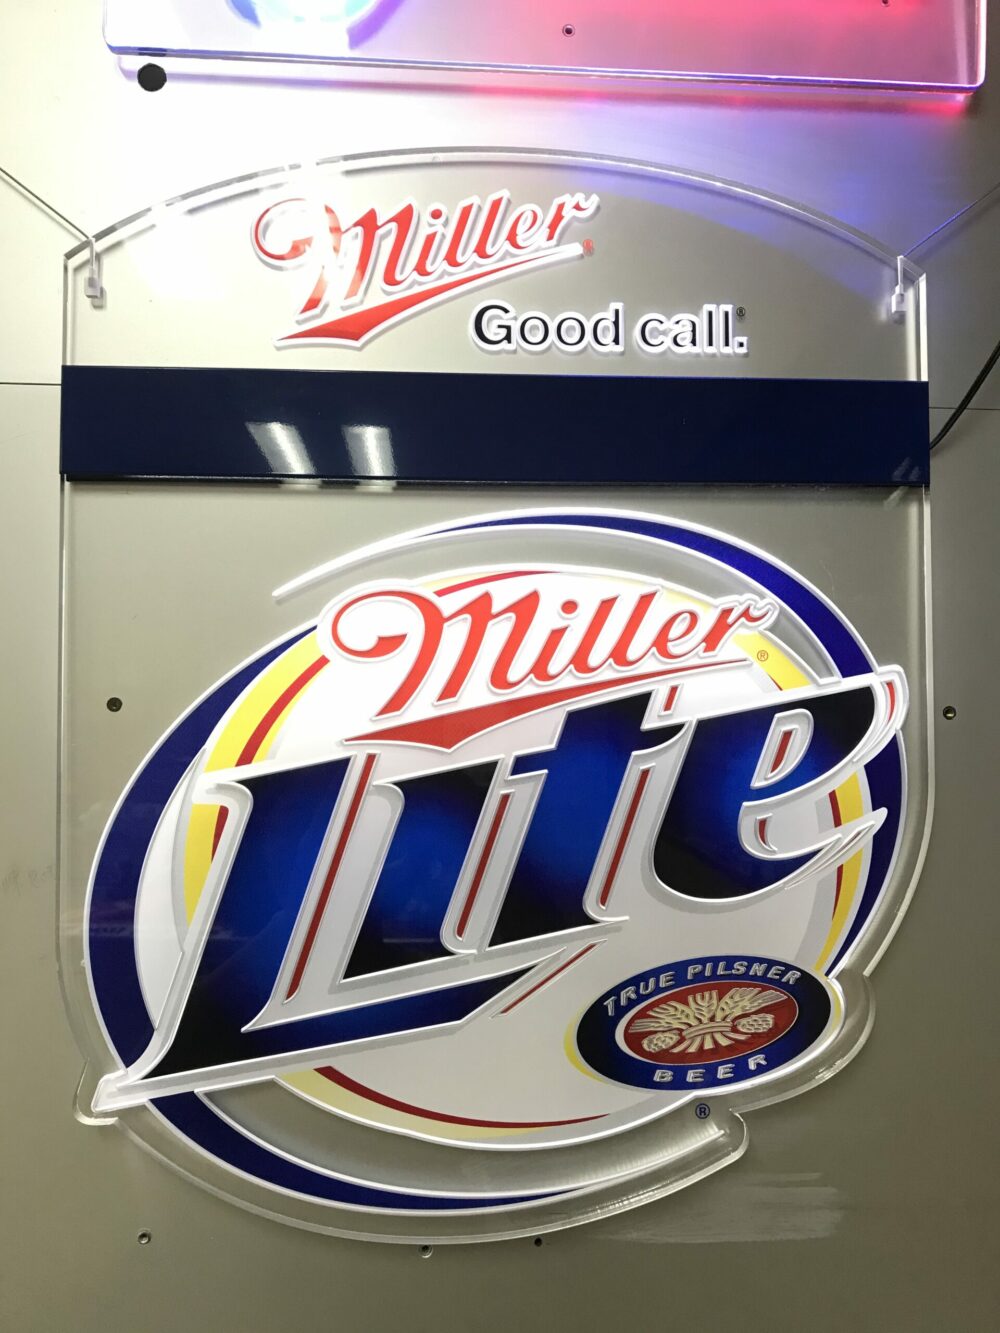 商業招牌LOGO設計｜Miller Lite beer 印刷看板｜耀陽電子有限公司